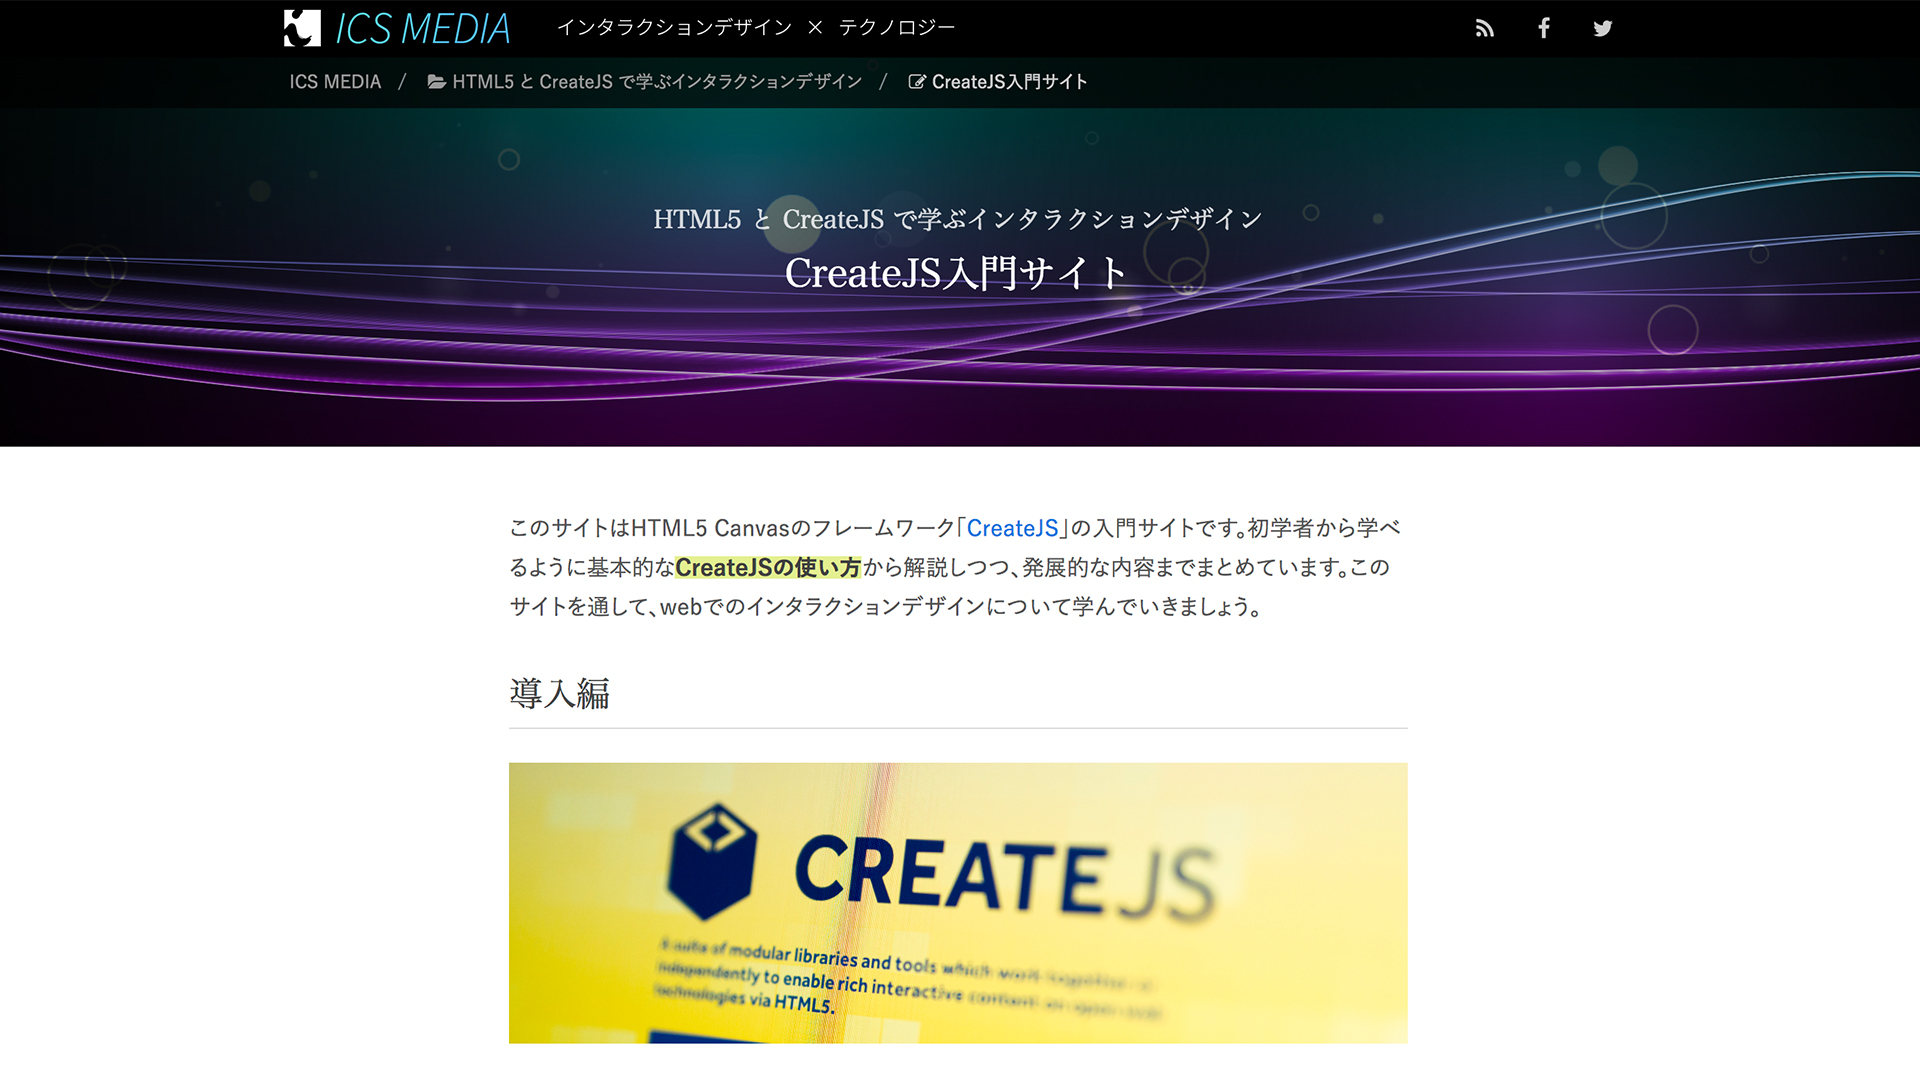 CreateJS入門サイト